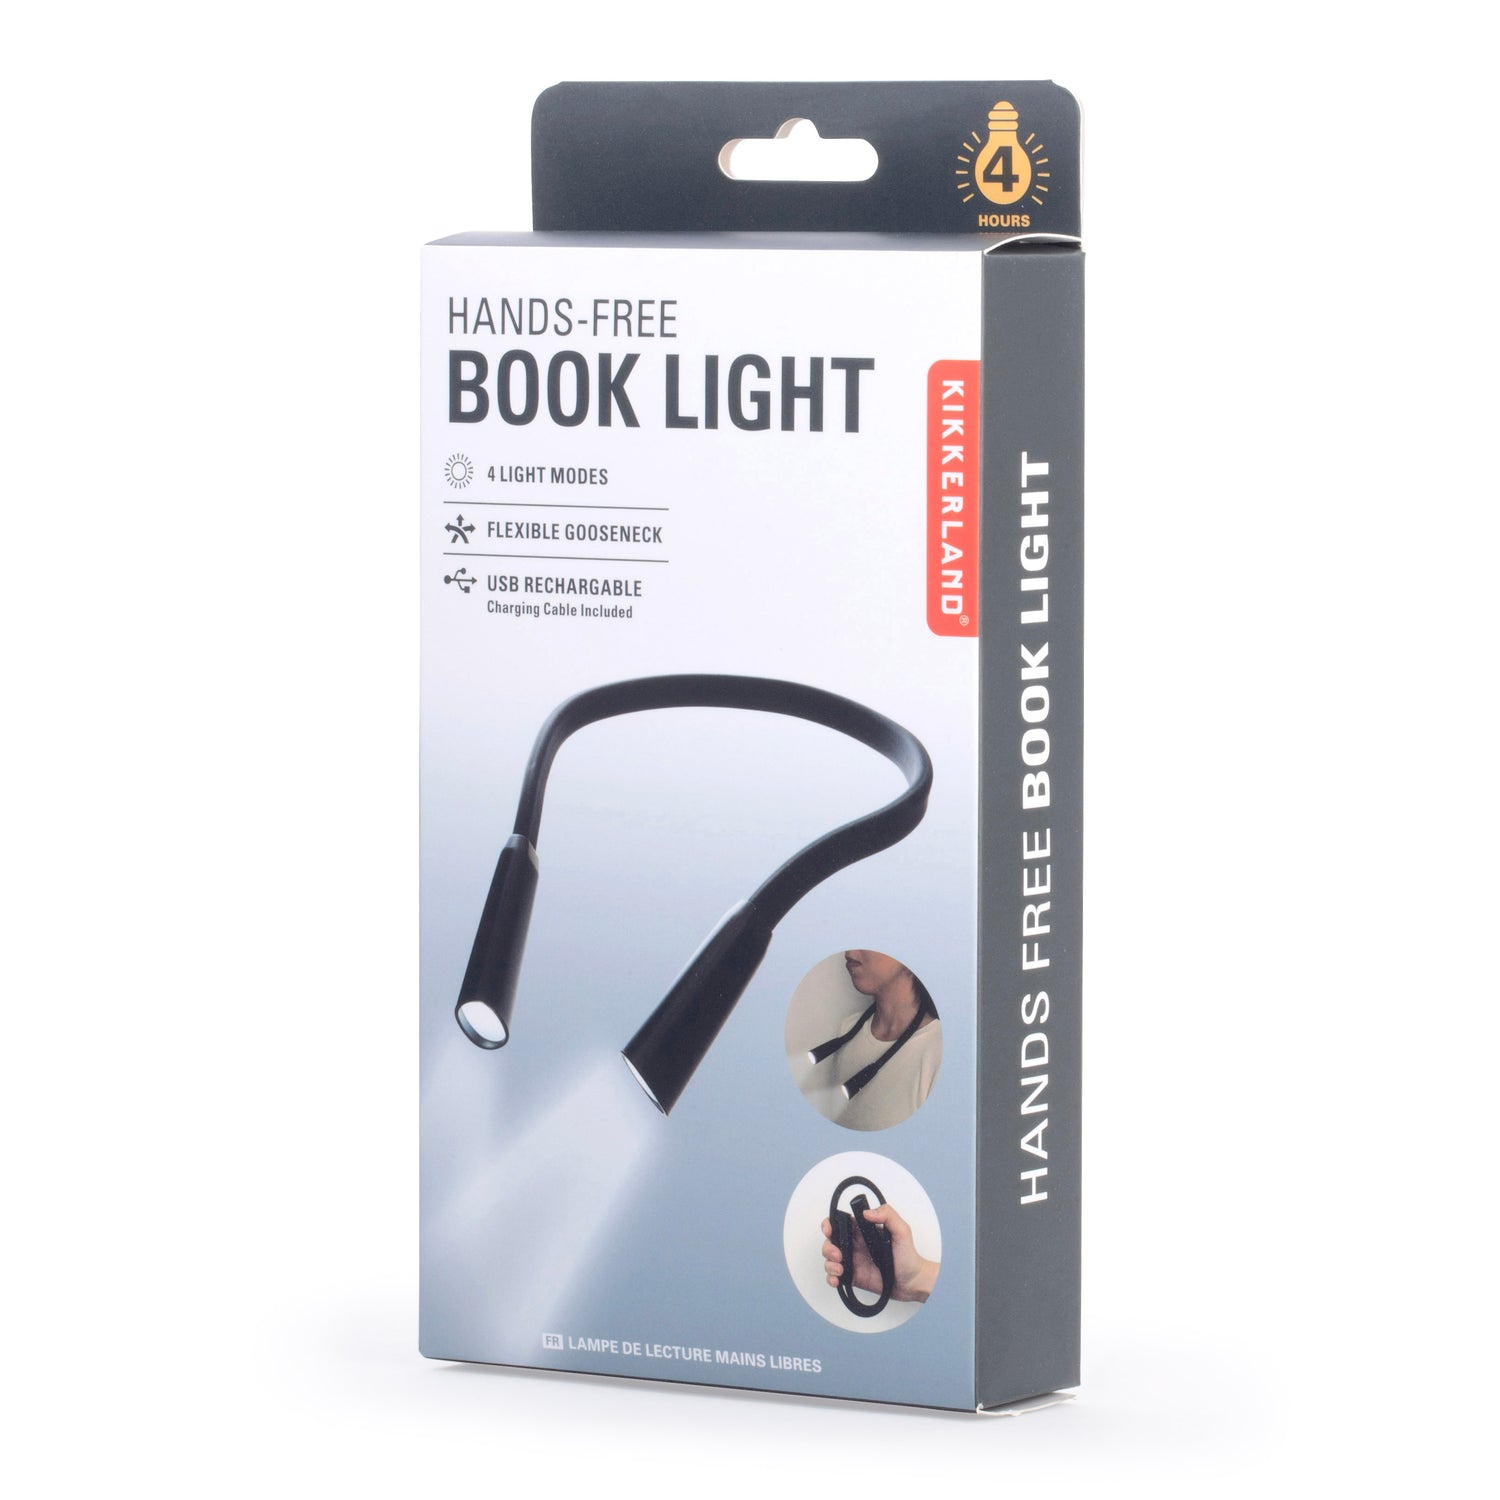 Handsfree boeklamp